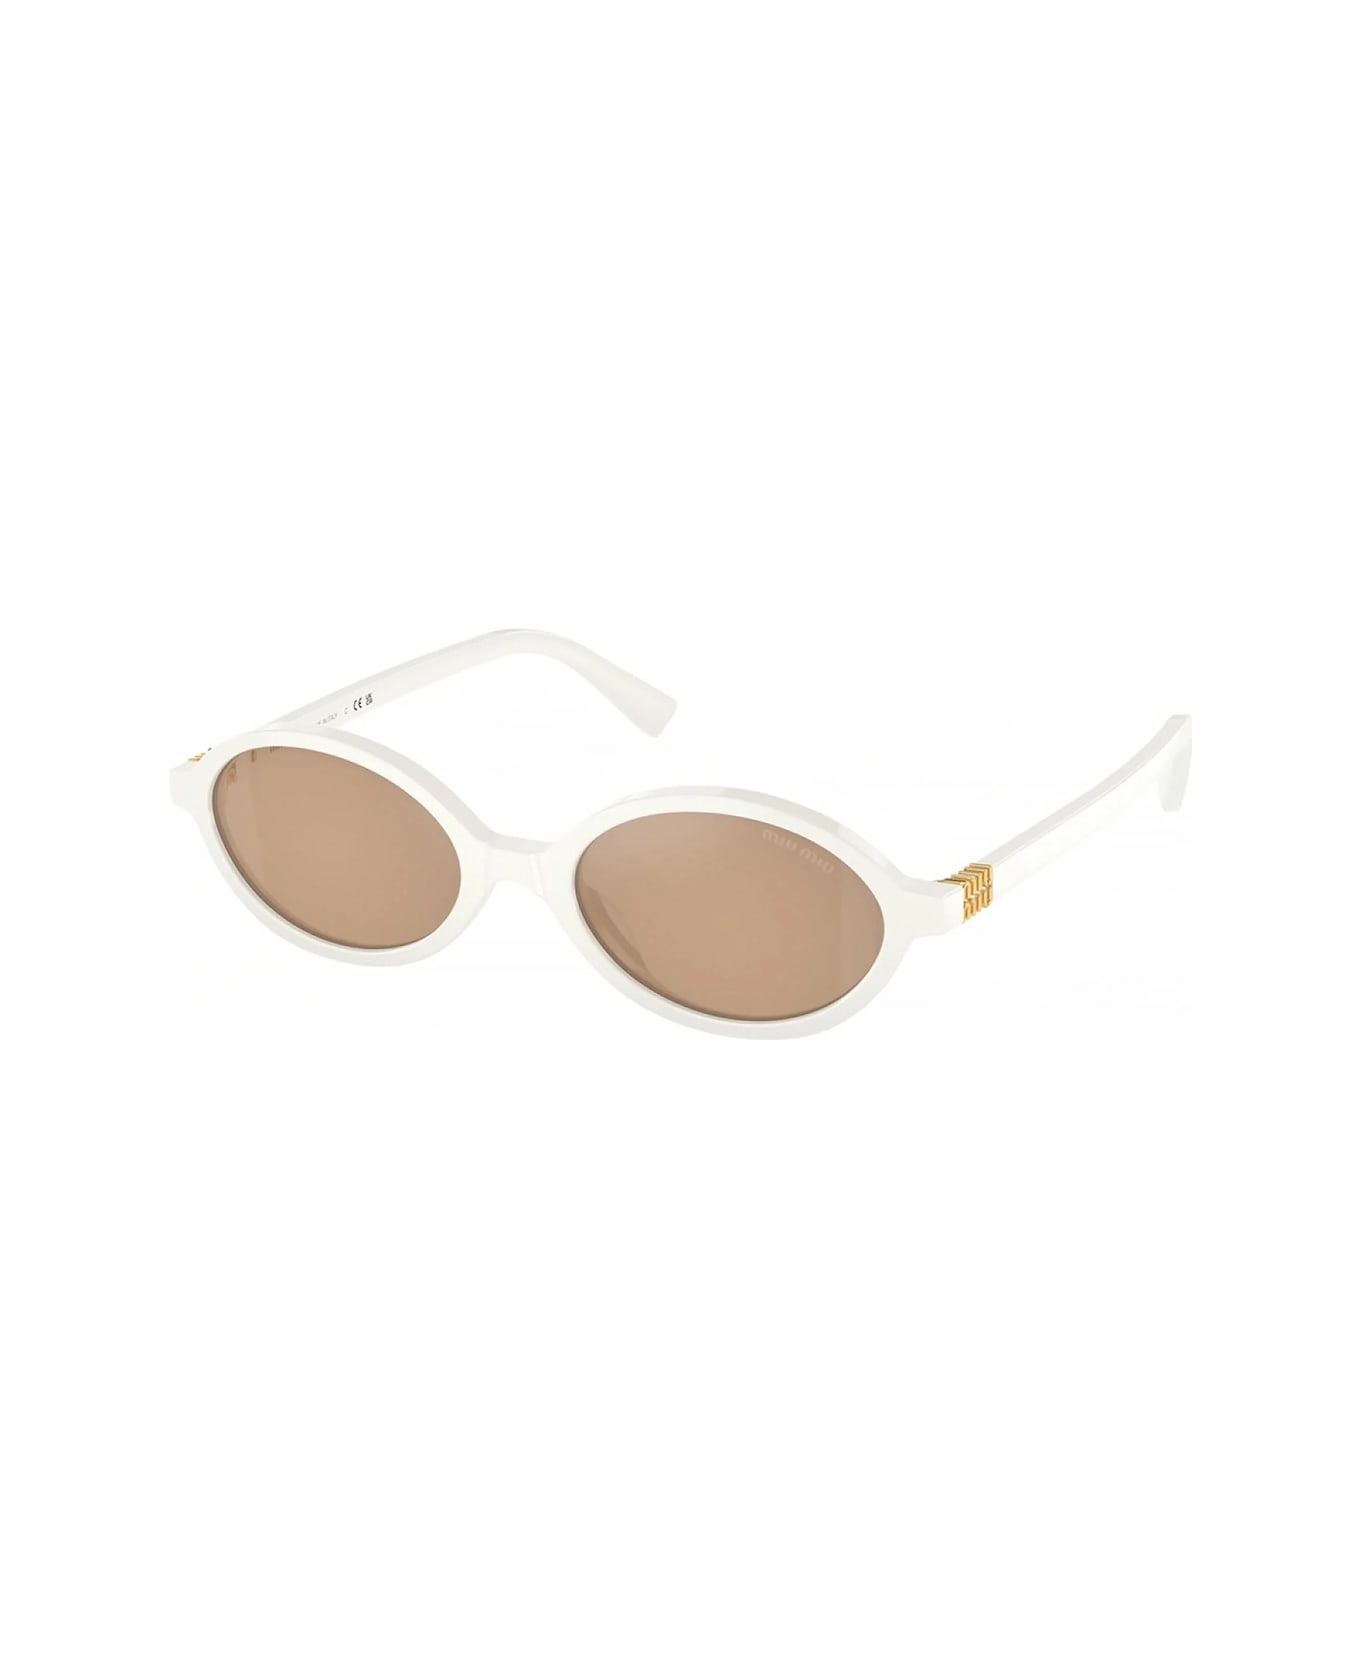 Miu Miu 0mu 04zs Regard 14240d Bianco Sunglasses - Bianco